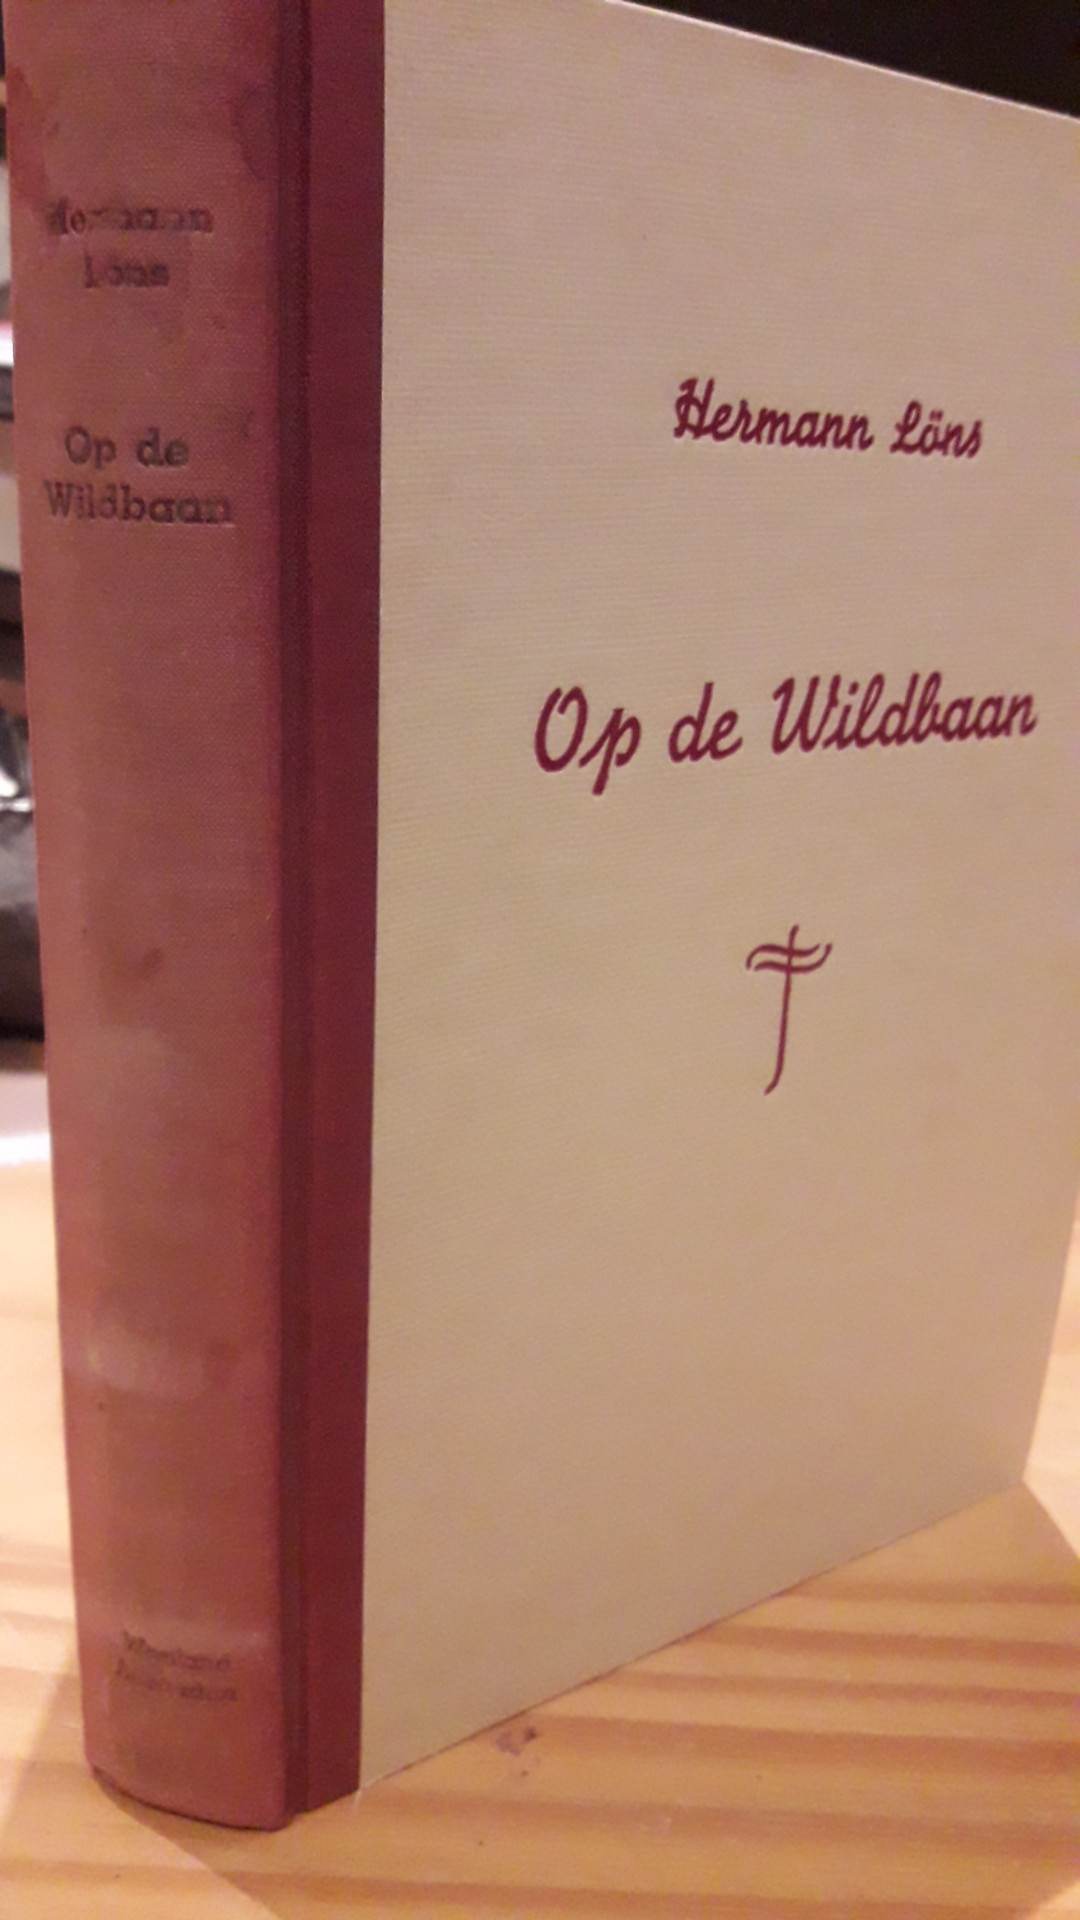 Herman Lons - Op de wildbaan - 230 blz / WESTLAND 1942 Nederlandse collaboratie uitgeverij